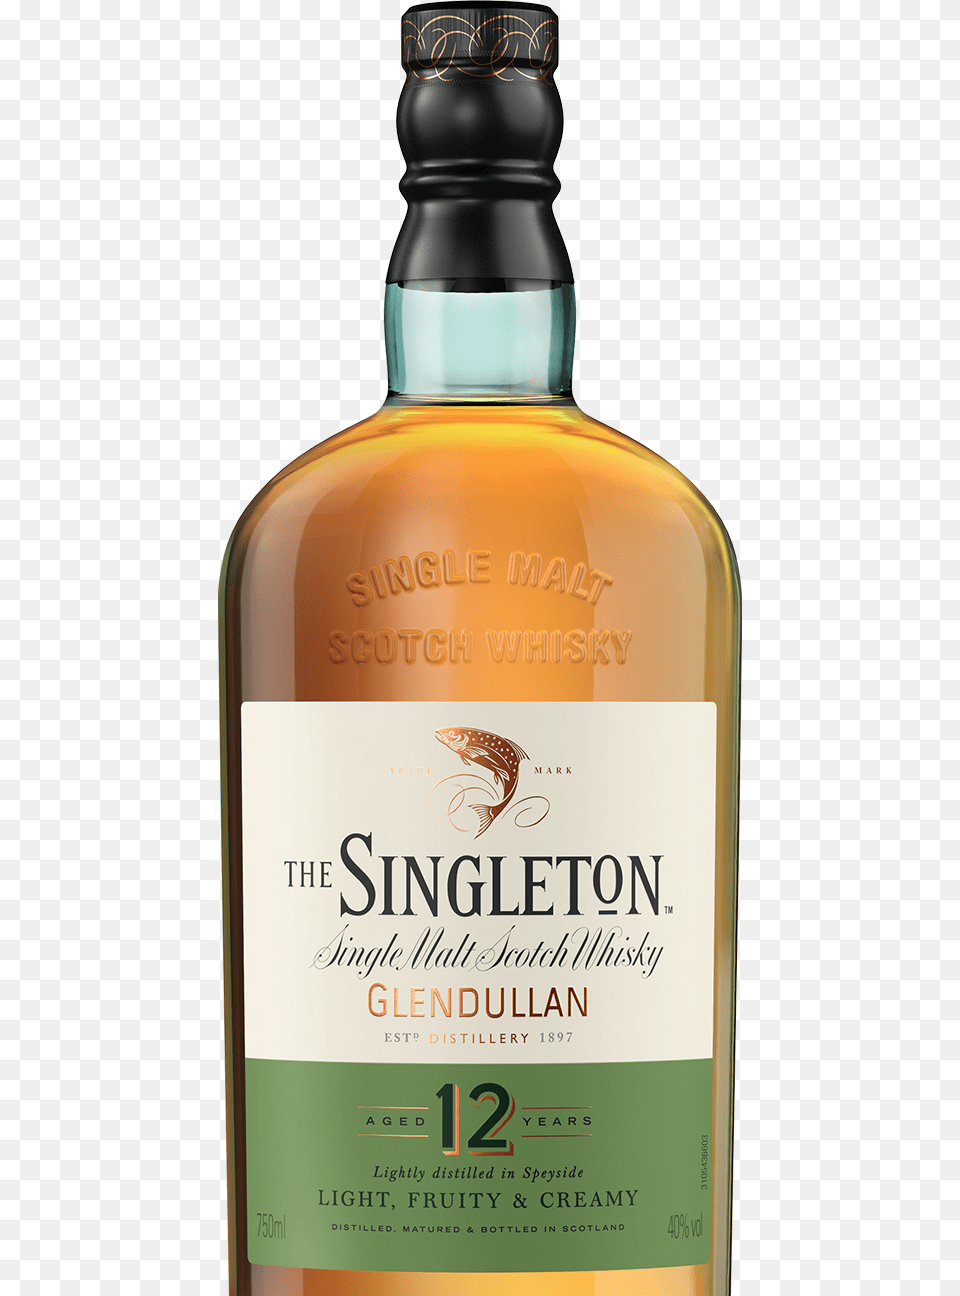 The Singleton 12 Years Of Age Whisky Singleton Whisky, Alcohol, Beverage, Liquor, Bottle Png Image